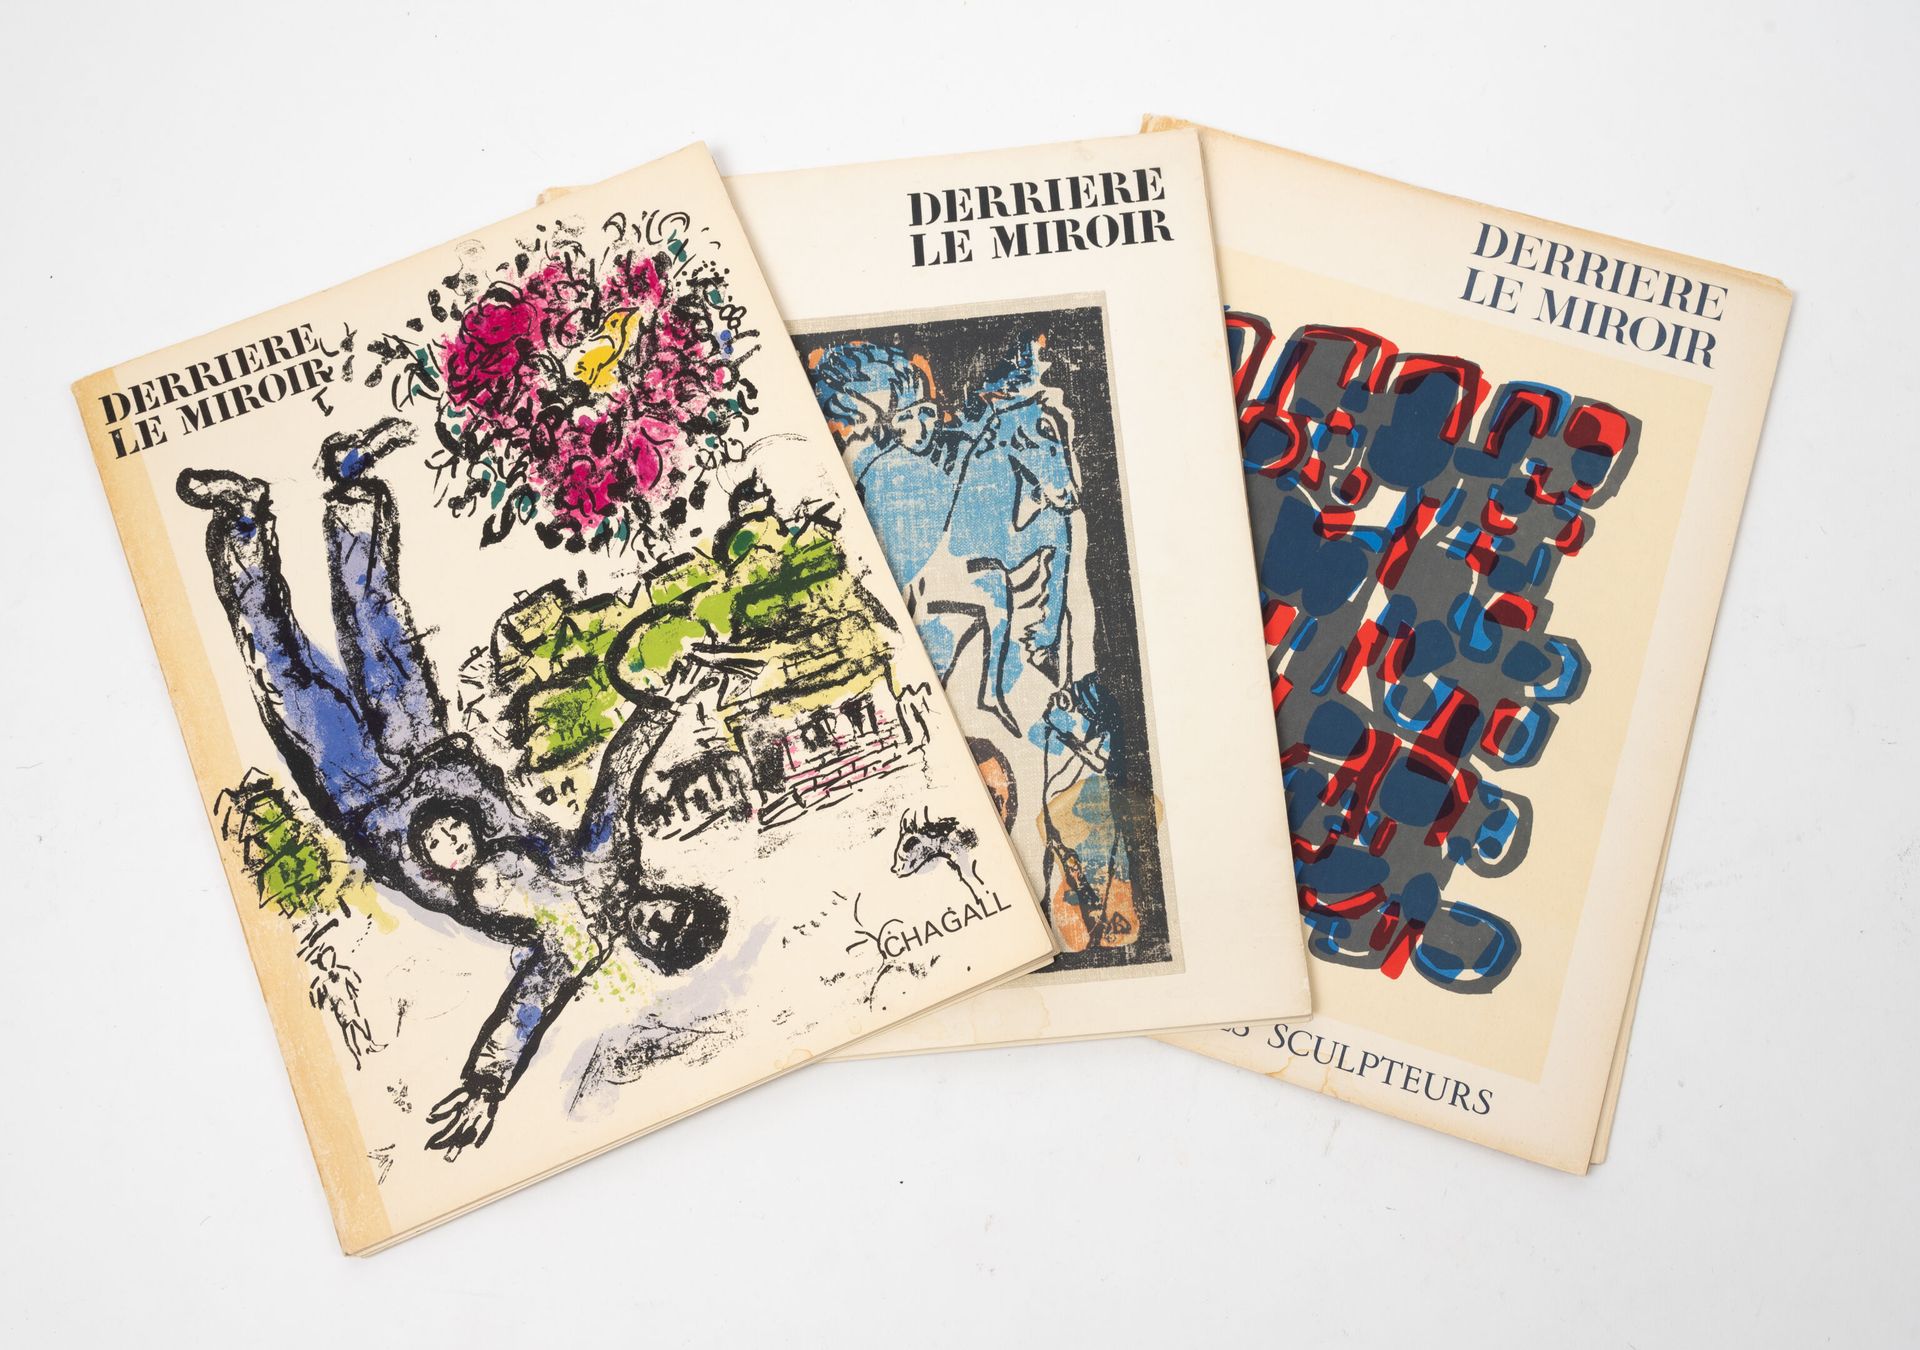 DERRIERE LE MIROIR Lote de 3 volúmenes:
-N° 119, 1960, Colectiva.
-N° 133, oct-n&hellip;